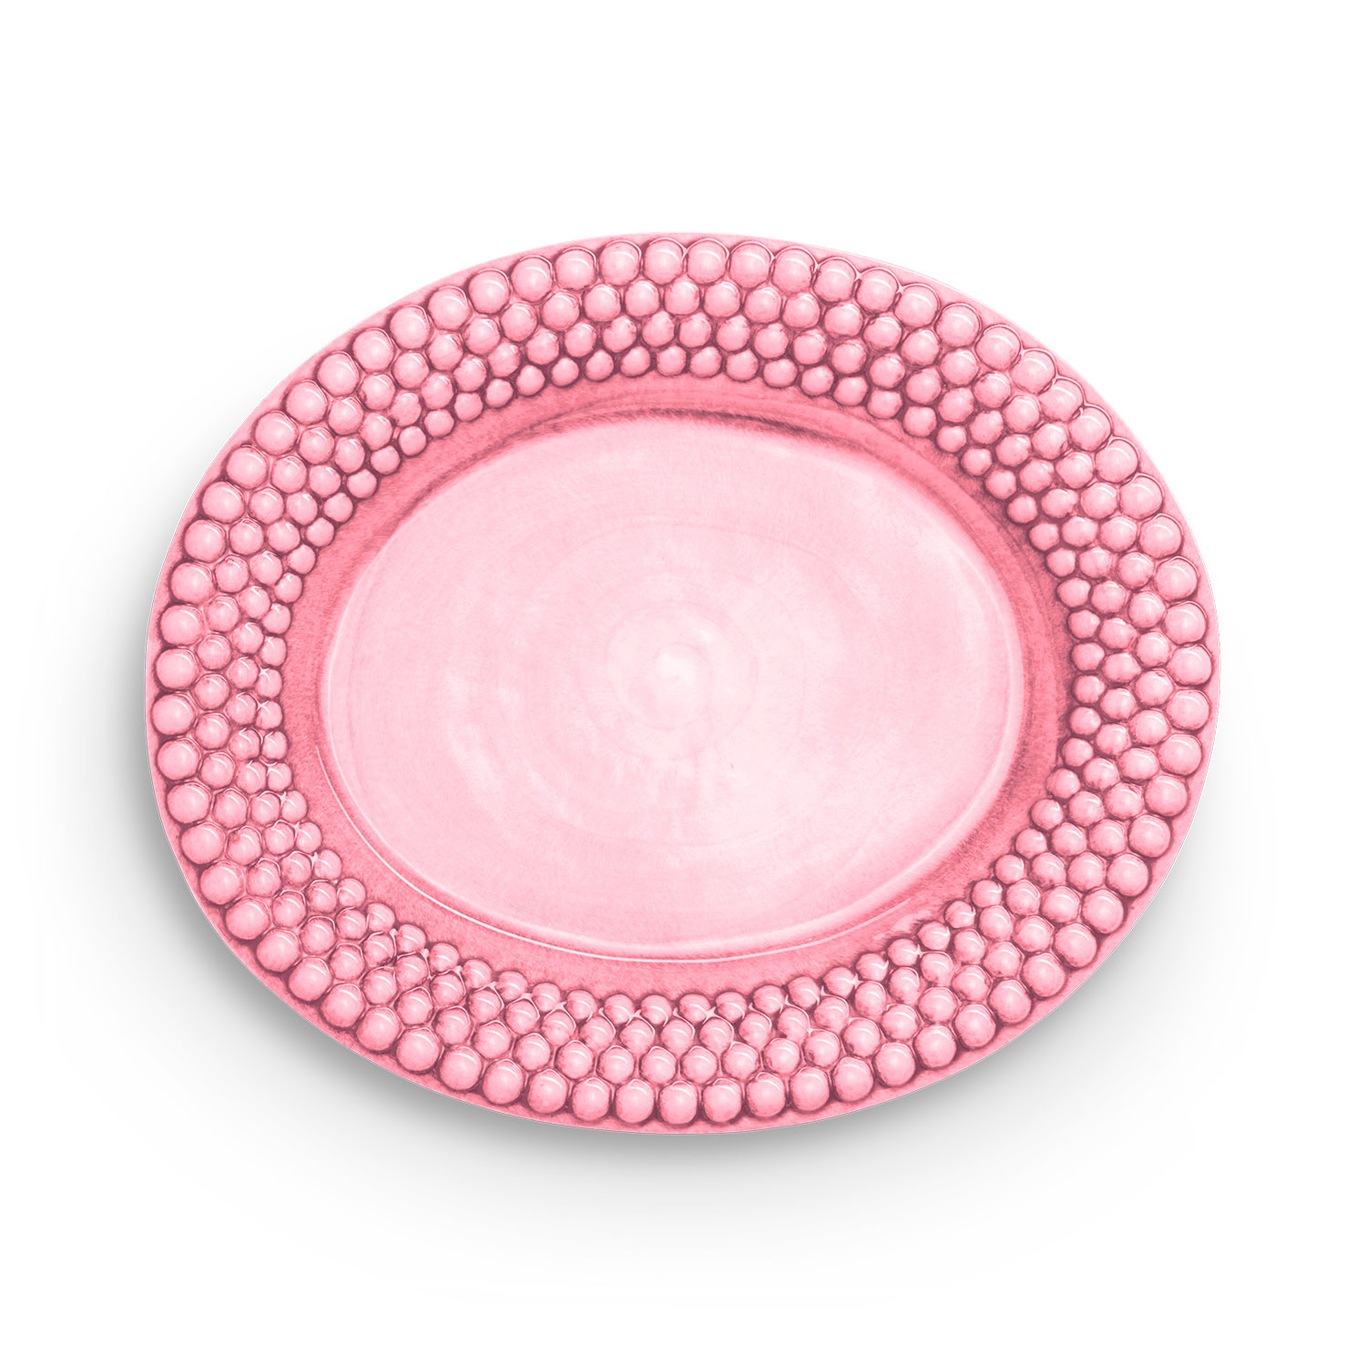 Bubbles Platter Oval 35 cm, Pink